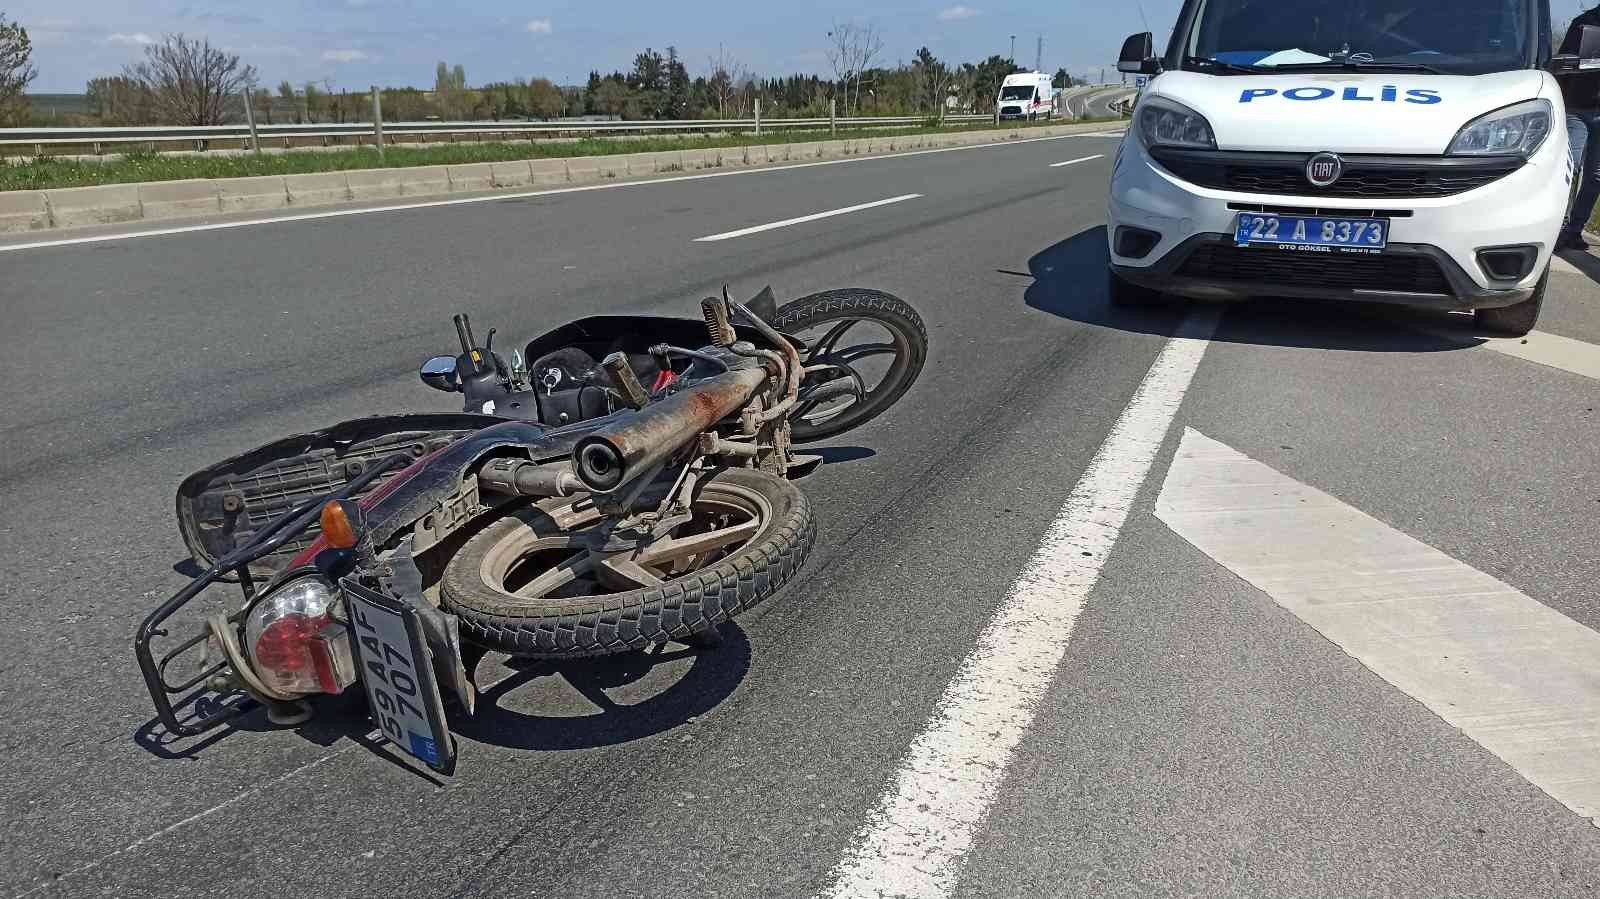 Edirne’nin Keşan ilçesinde kamyonet ile motosiklet şehirler arası yolda çapıştı. Kaza sırasında motosikletinden düşen sürücü yaralanarak ...